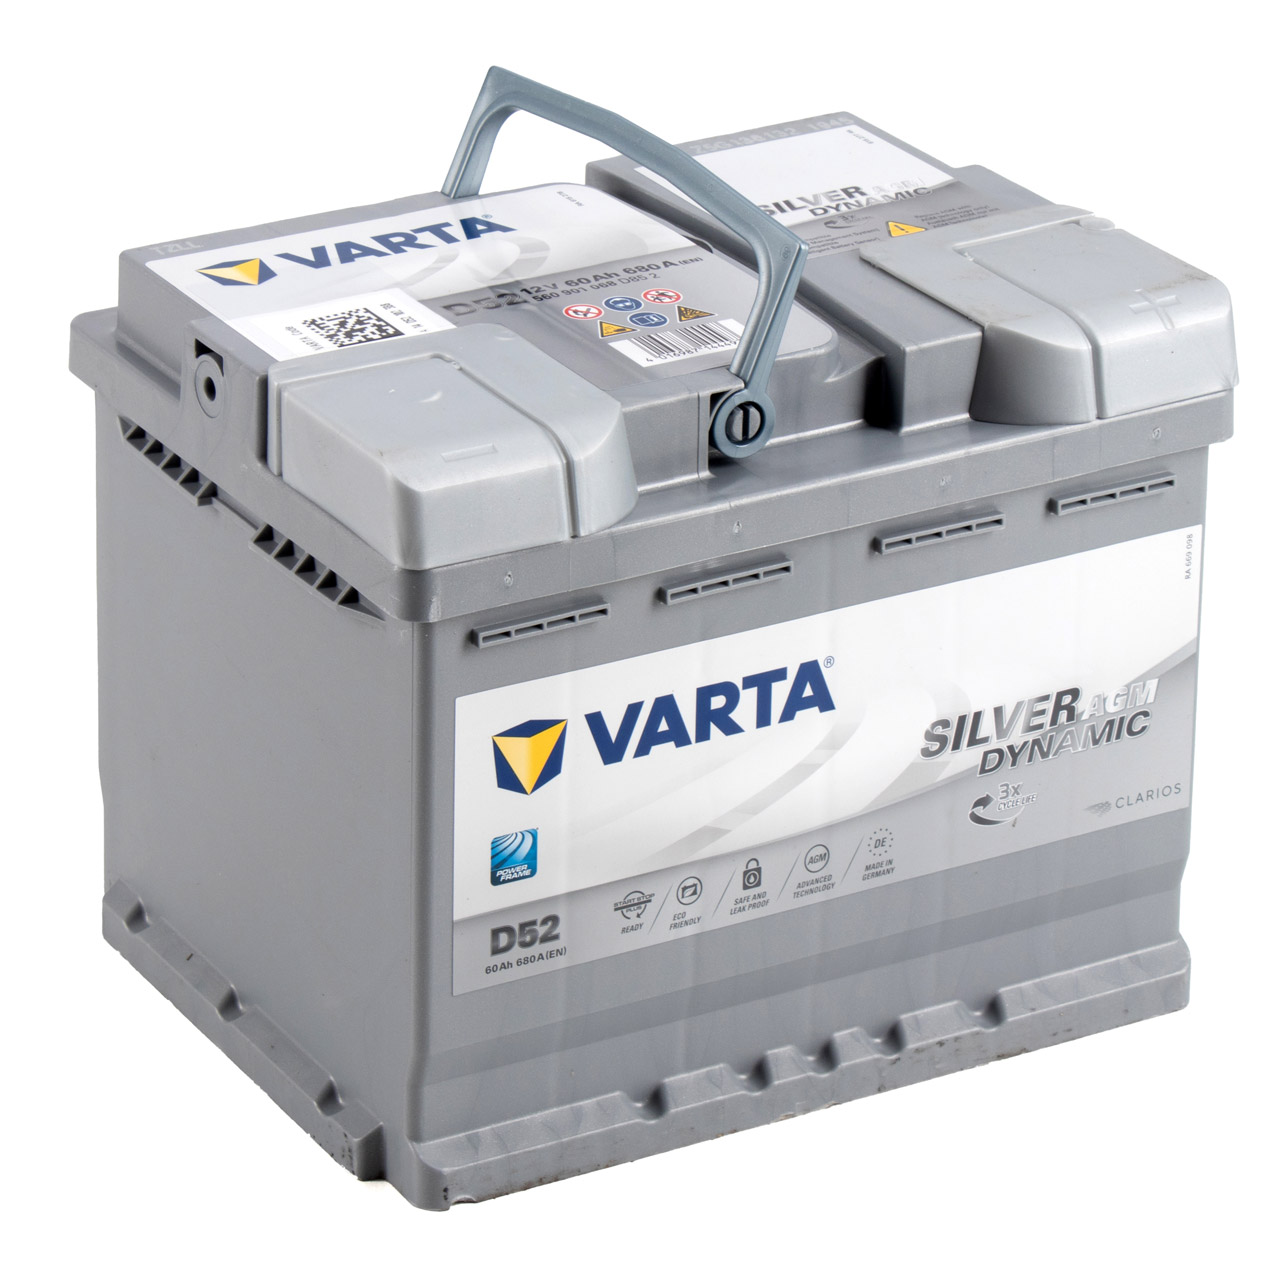 VARTA Starterbatterien / Autobatterien - 560901068D852 